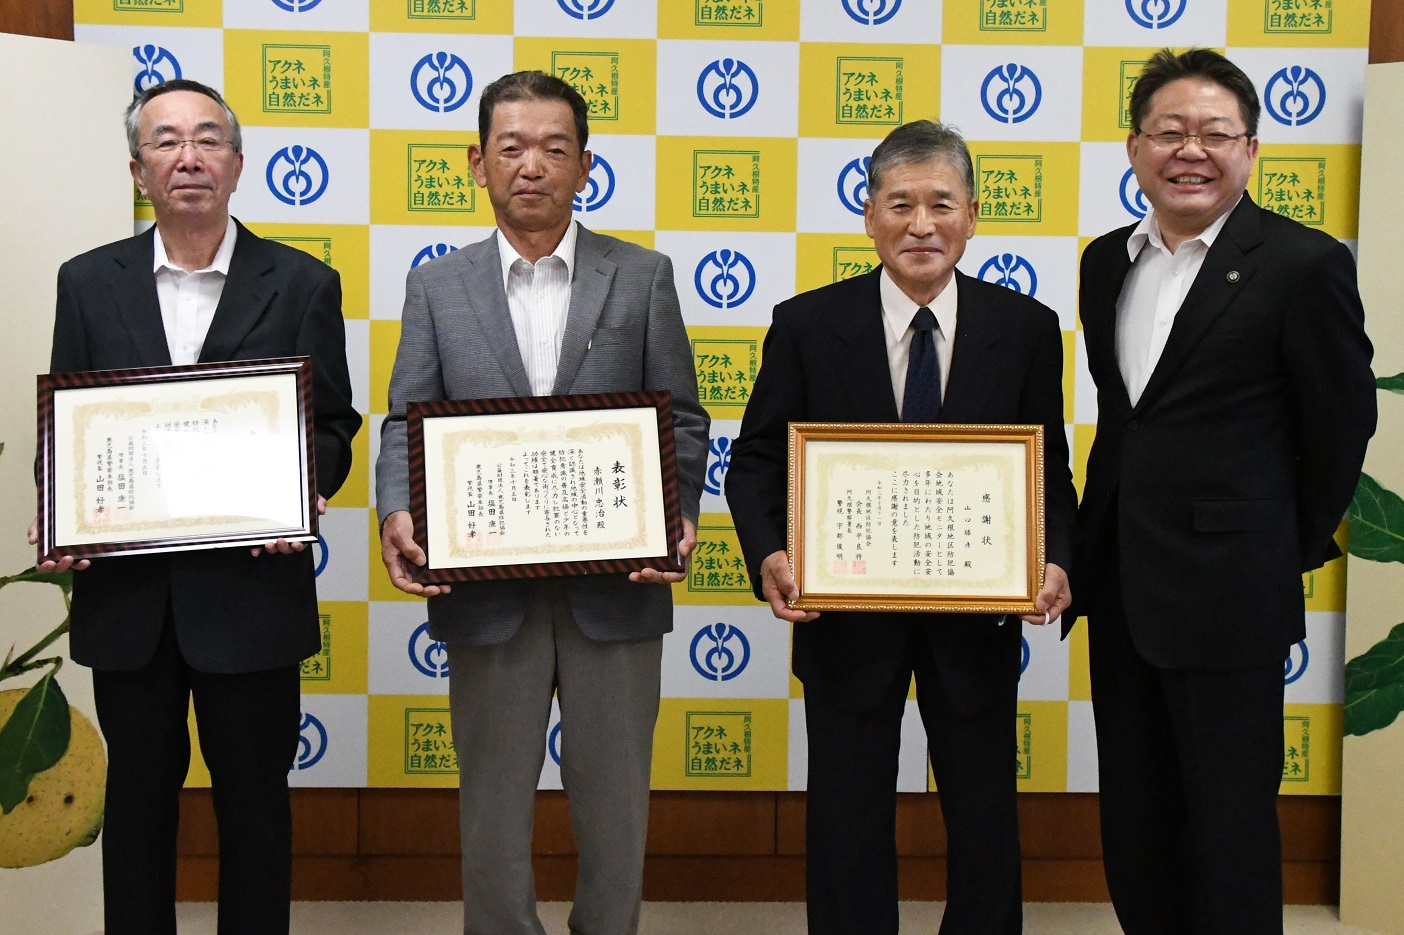 築地純人さん、赤瀬川忠治さん、山口勝彦さんと西平市長の写真